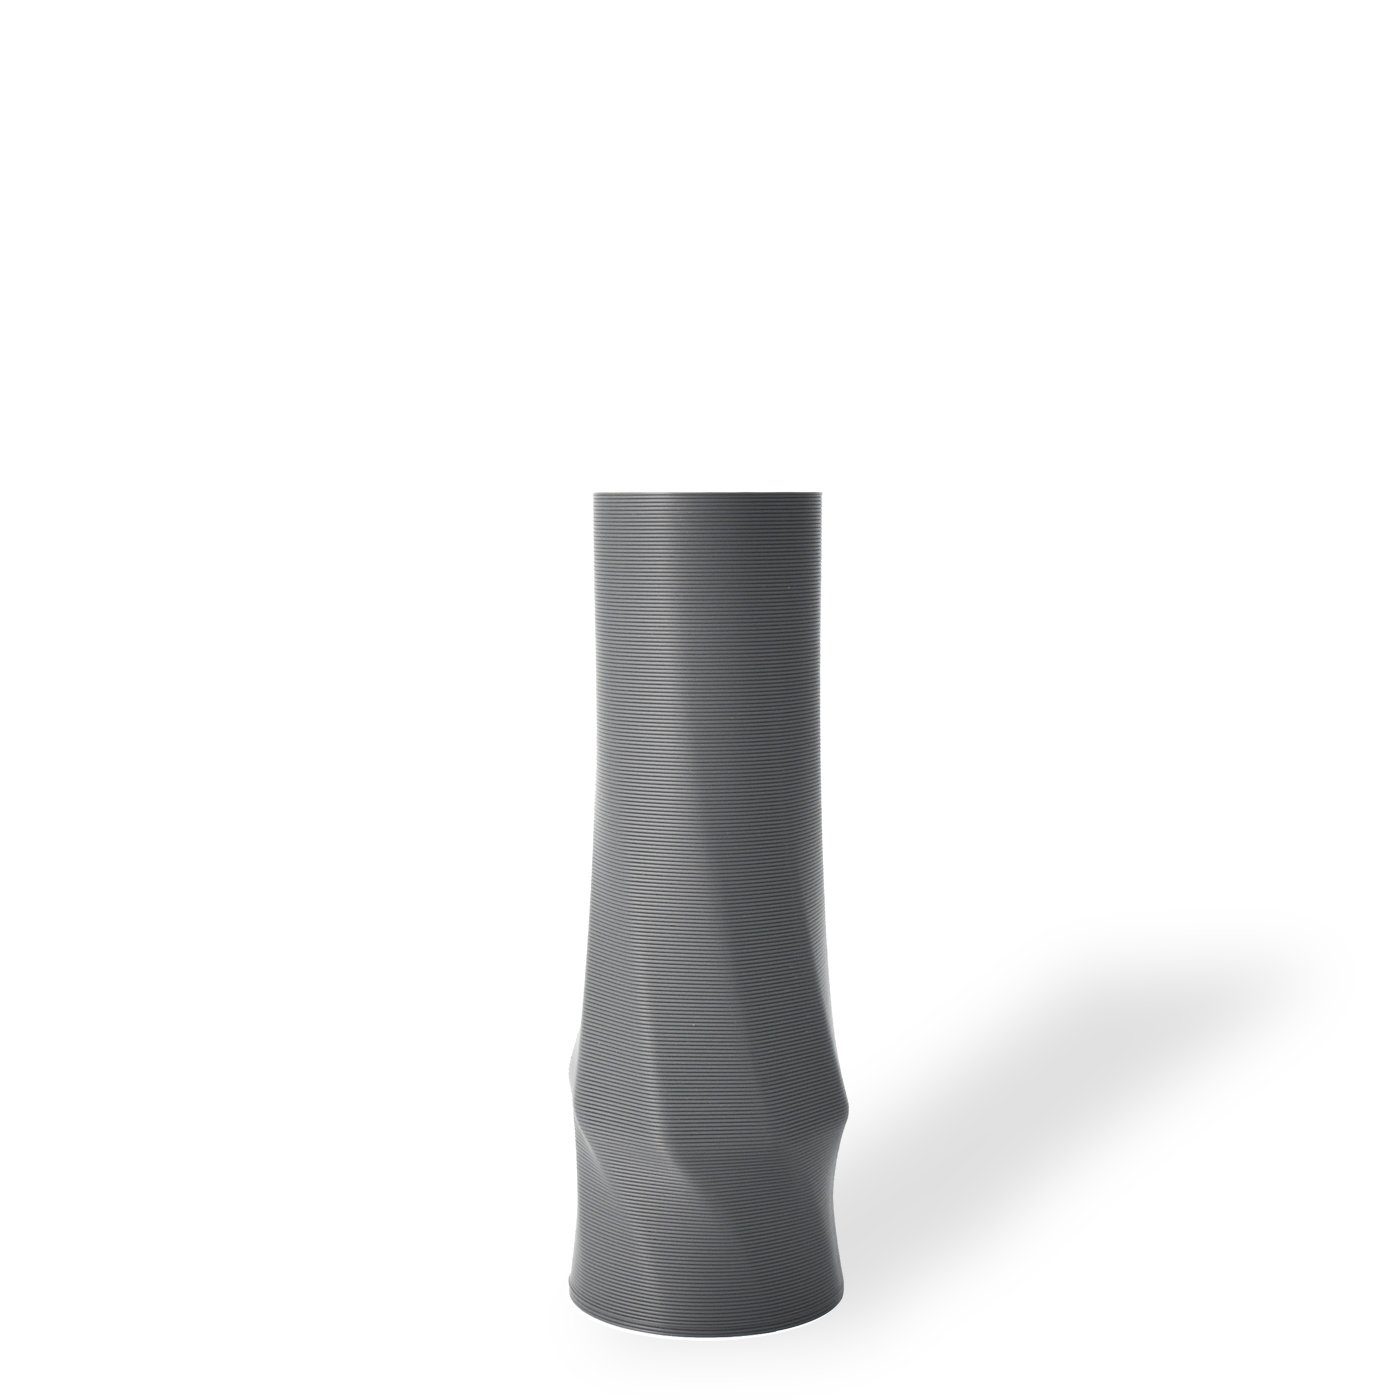 Shapes - Decorations Dekovase the vase - circle (basic), 3D Vasen, viele Farben, 100% 3D-Druck (Einzelmodell, 1 Vase), Wasserdicht; Leichte Struktur innerhalb des Materials (Rillung) Grau